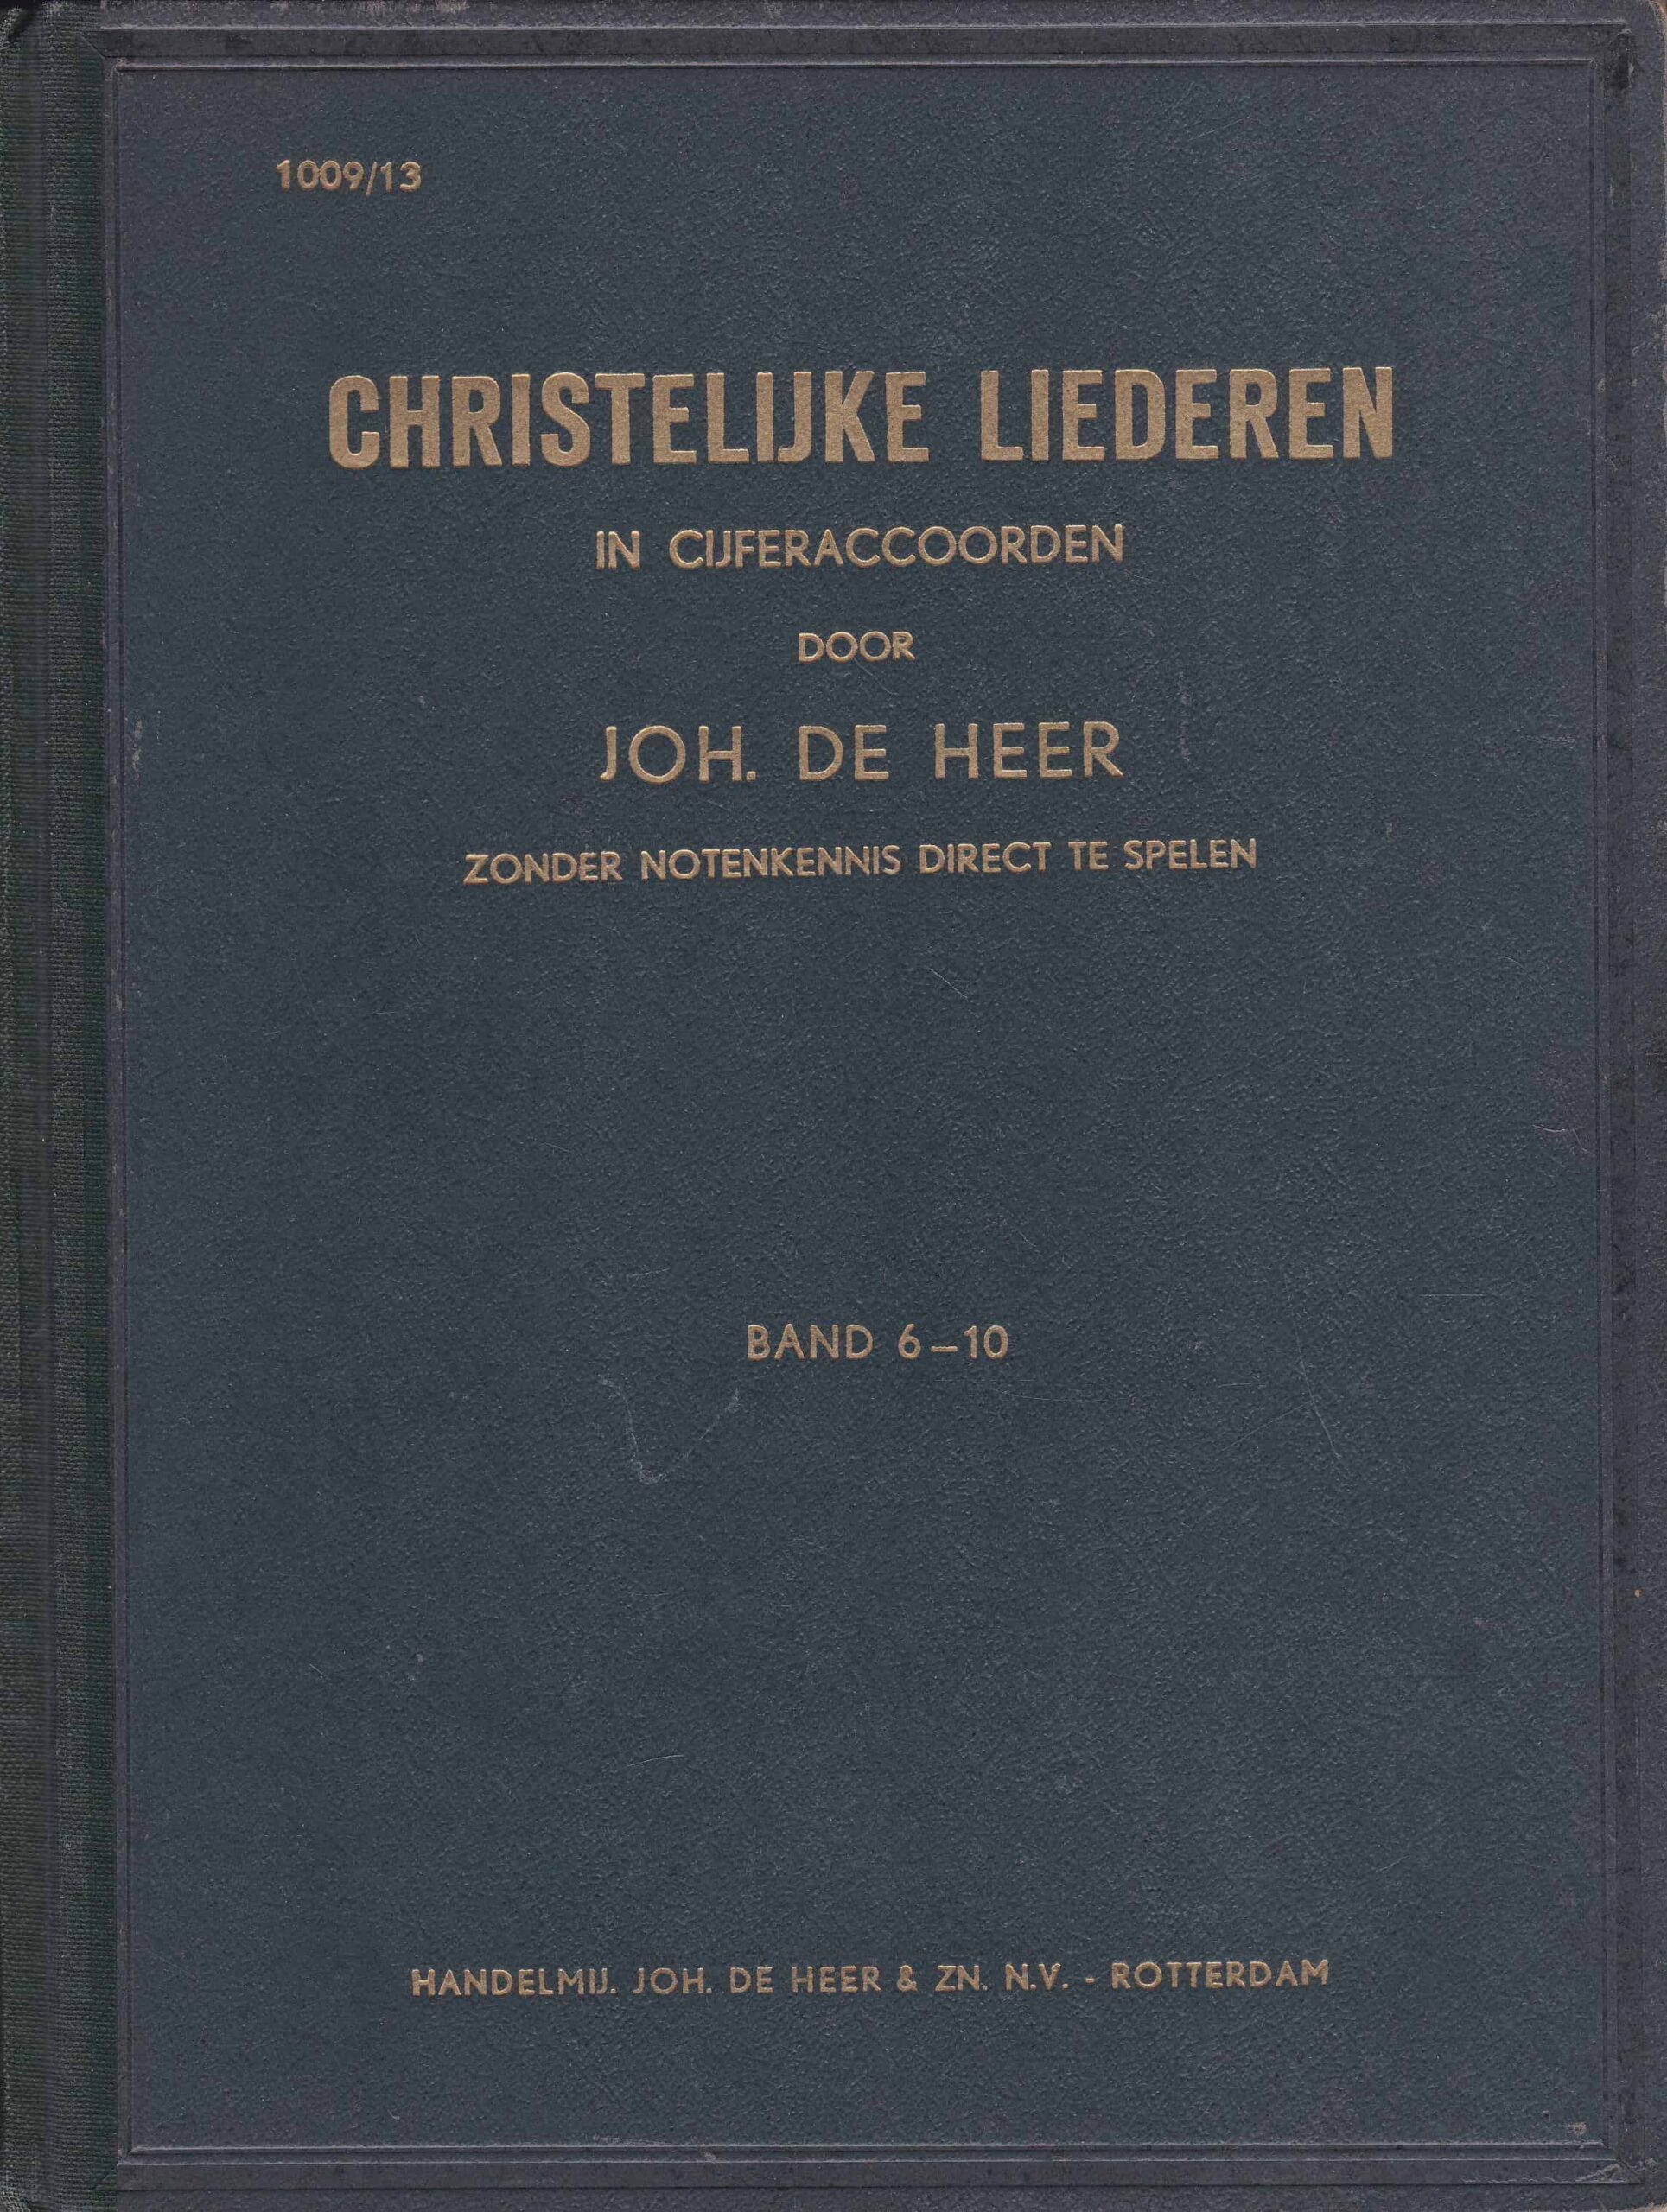 Slaapkamer magnifiek Industrieel Heer, Joh. de: Christelijke liederen in cijferaccoorden (band 6-10) – Van  der Wal Boeken